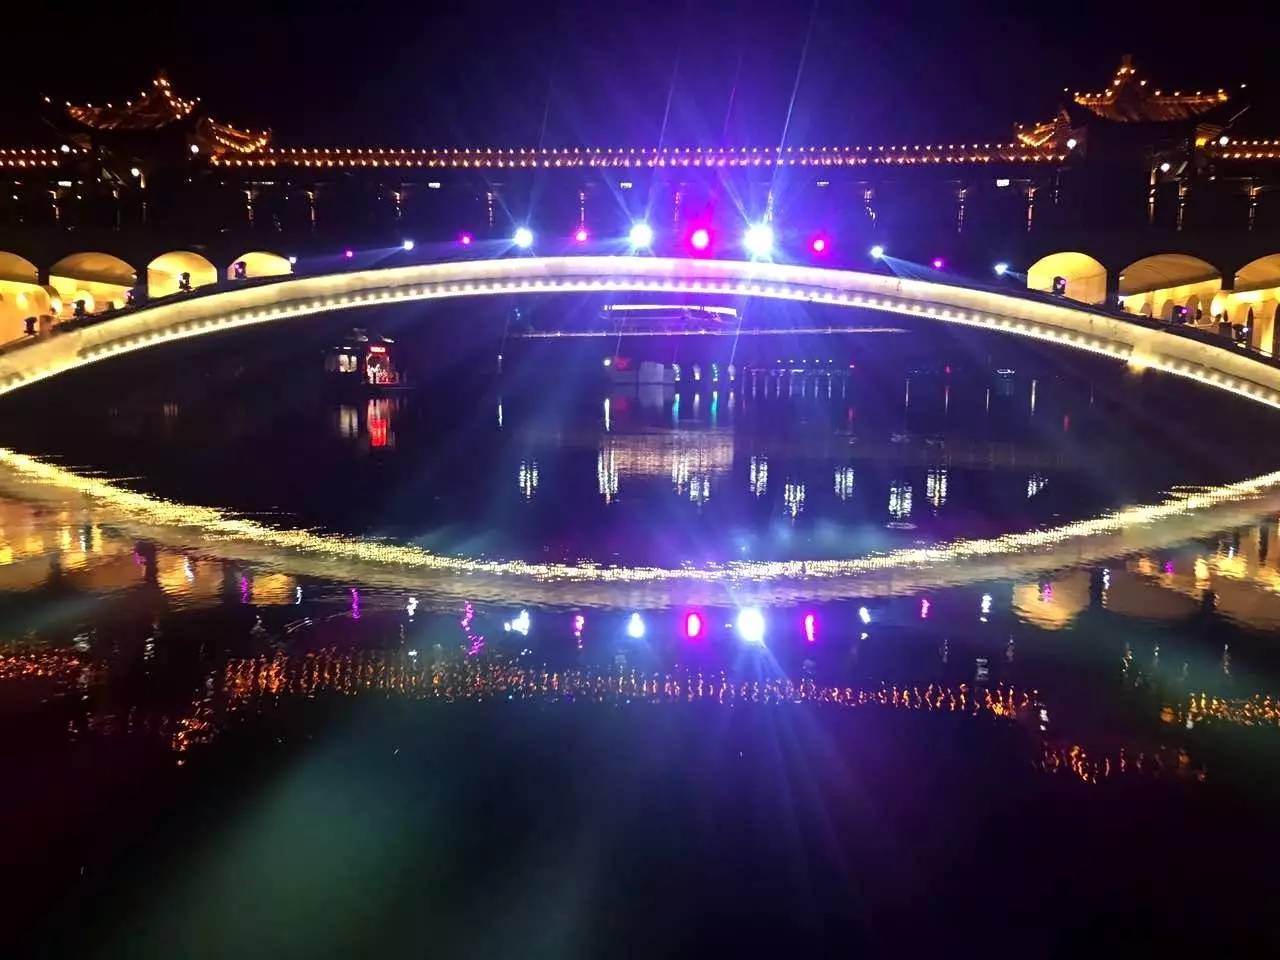 武宁长水桥中桥景观通道终于装饰完工,它以武宁的山水文化为背景,将